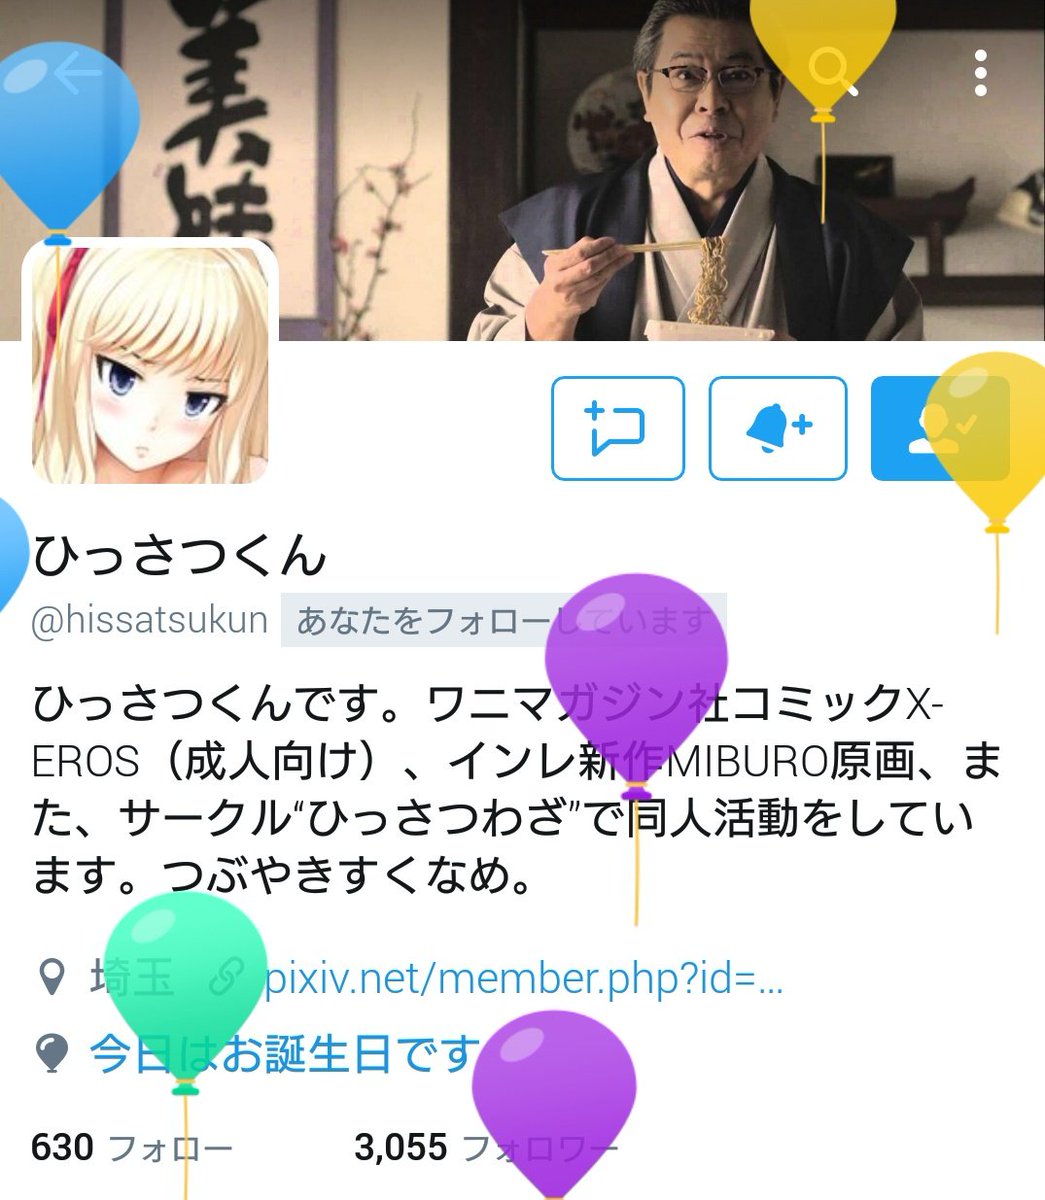 shimu on X: @hissatsukun ひっさつくん先生お誕生日おめでとうございます！ 新しい歳が更なる飛躍の年になるといいですね。  t.co8sn8R252T0  X